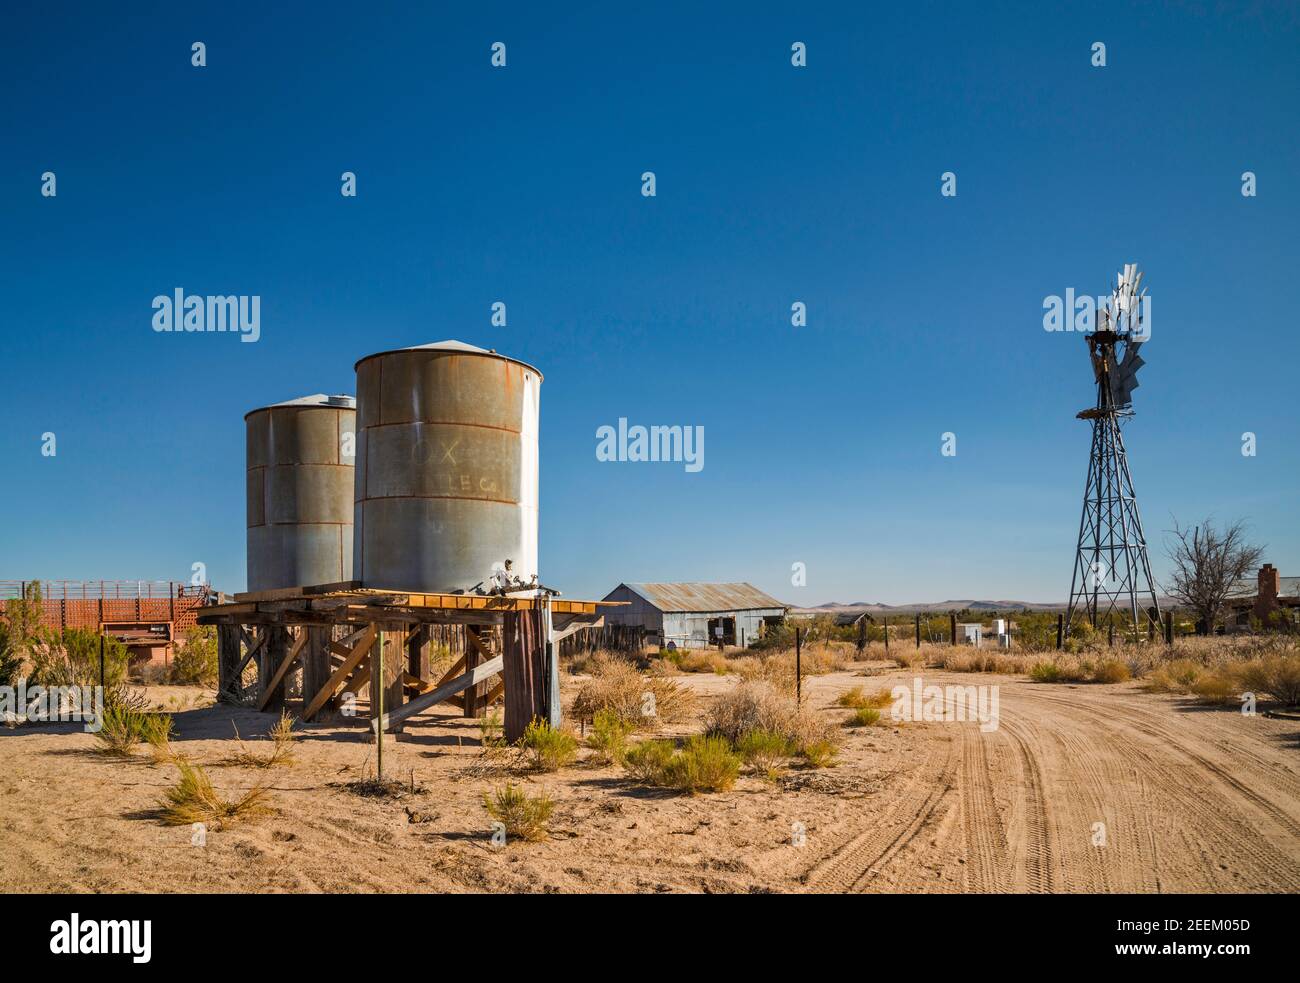 Serbatoi d'acqua, pompa d'acqua presso il ranch di Lanfair, Lanfair Valley, Mojave National Preserve, California, USA Foto Stock